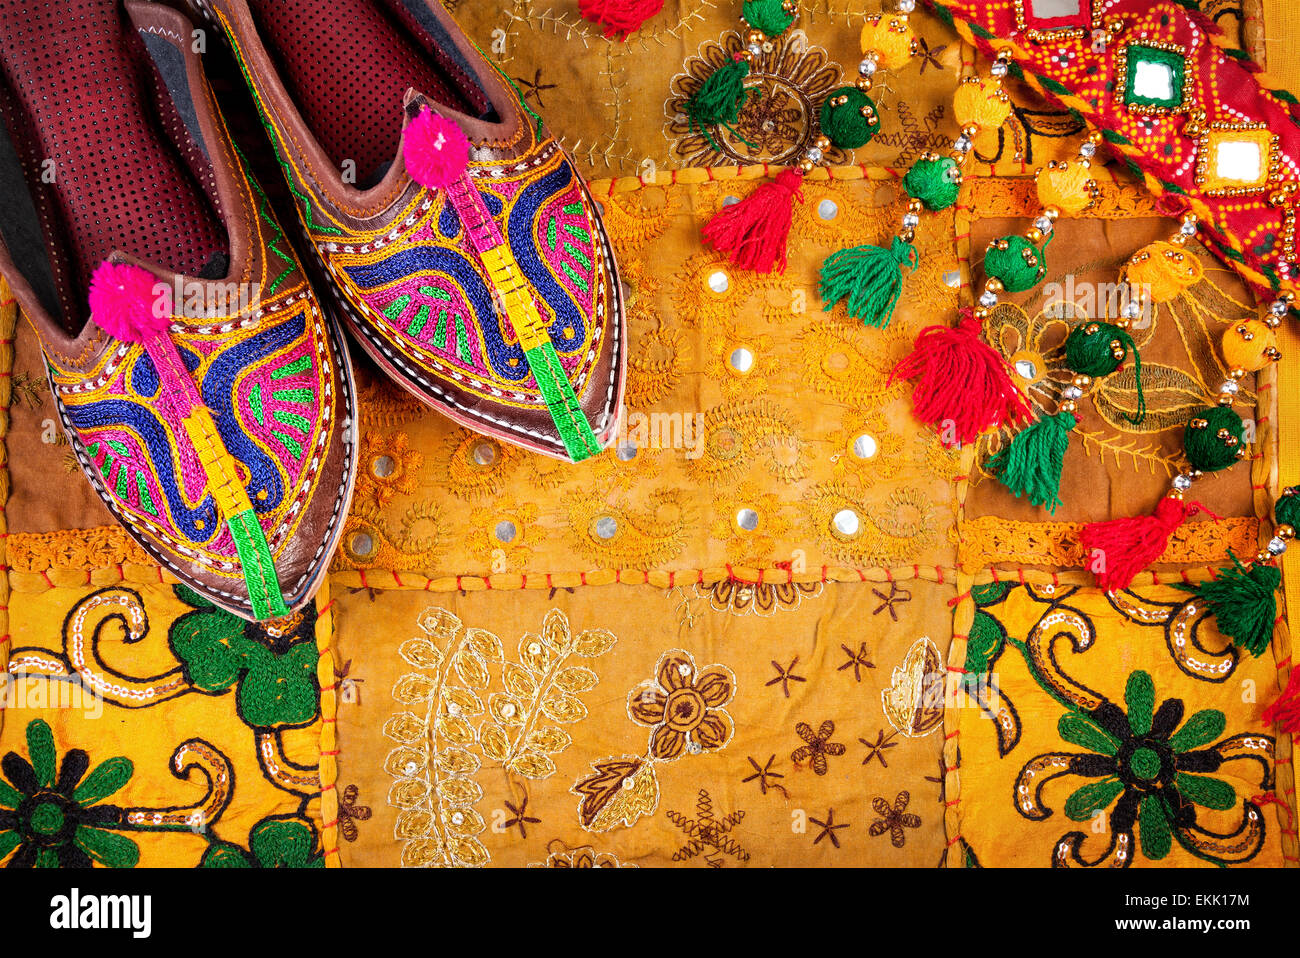 Colorate scarpe etniche e gipsy cintura gialla sul cuscino del Rajasthan coperchio sul mercato delle pulci in India Foto Stock